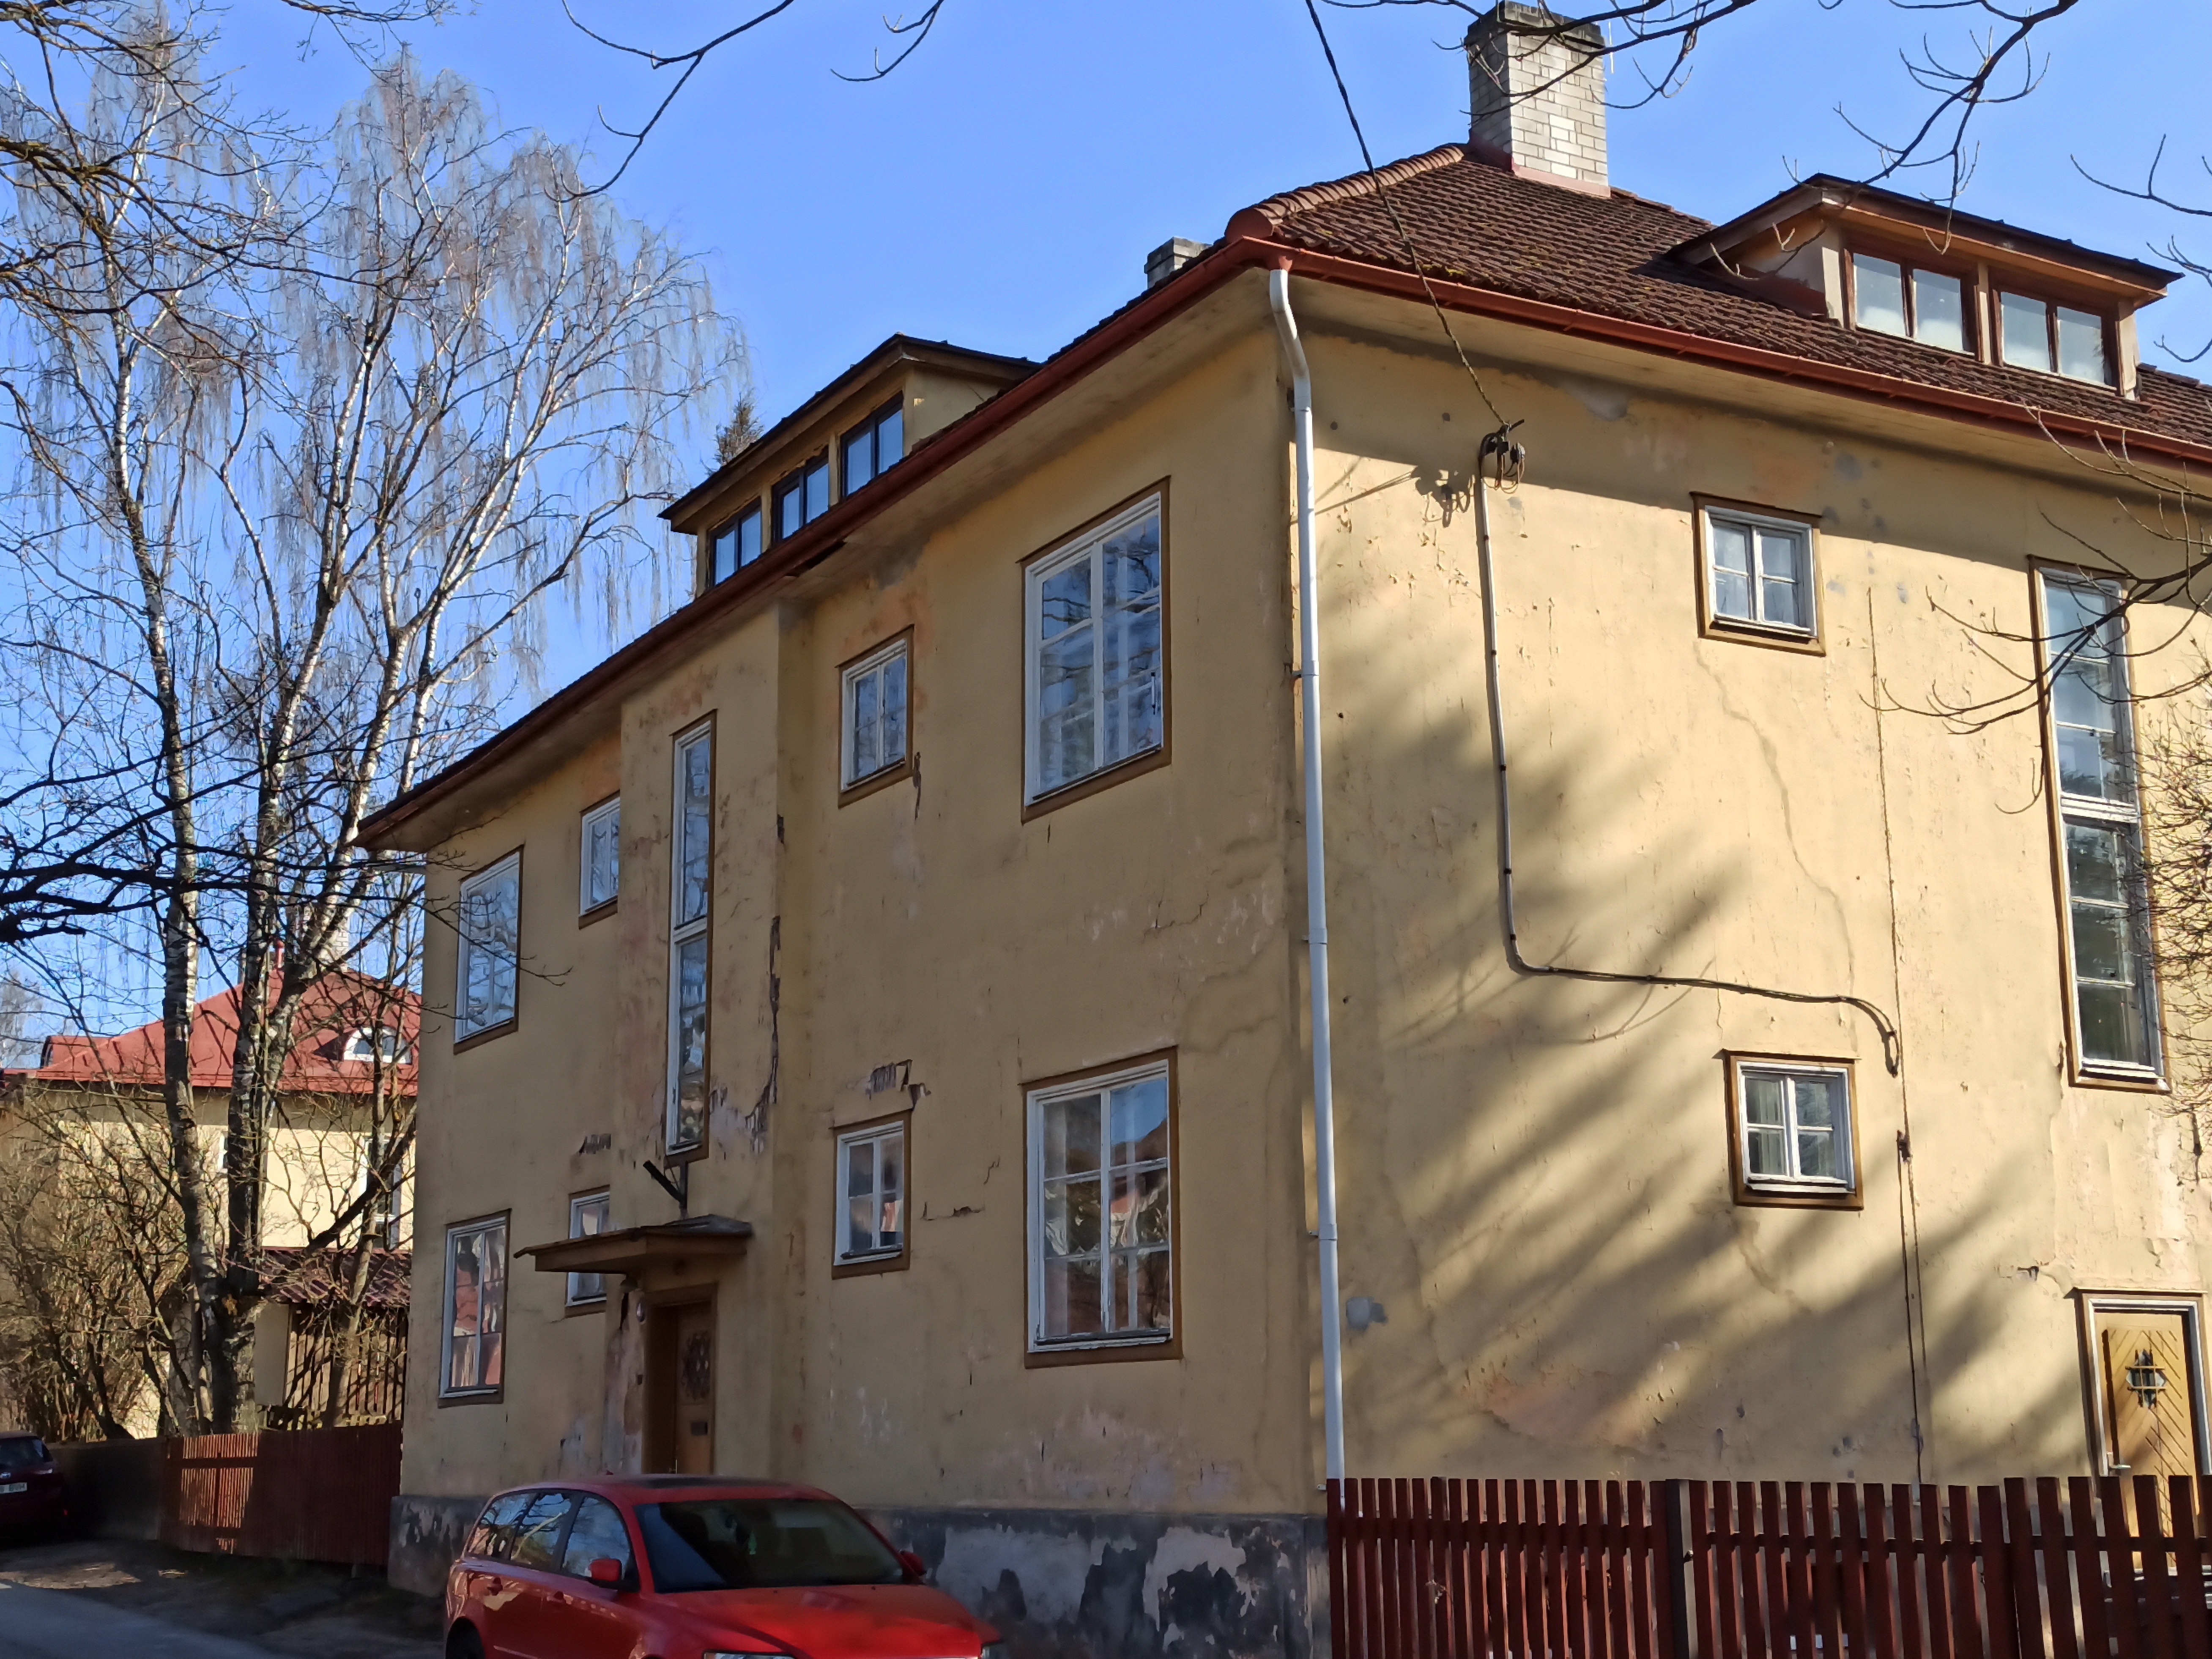 Tartu, Vikerkaare 4, Lüüside maja rephoto